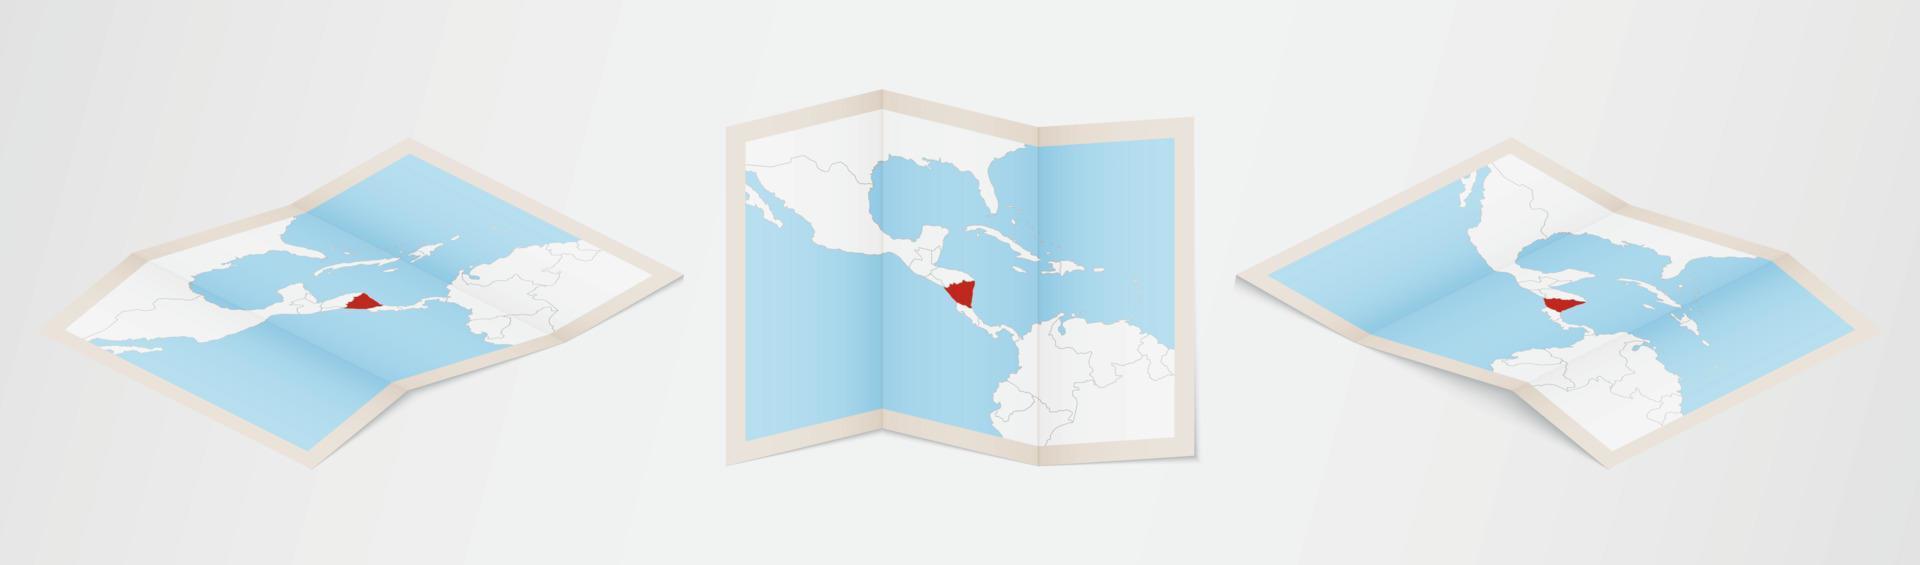 Faltkarte von Nicaragua in drei verschiedenen Versionen. vektor